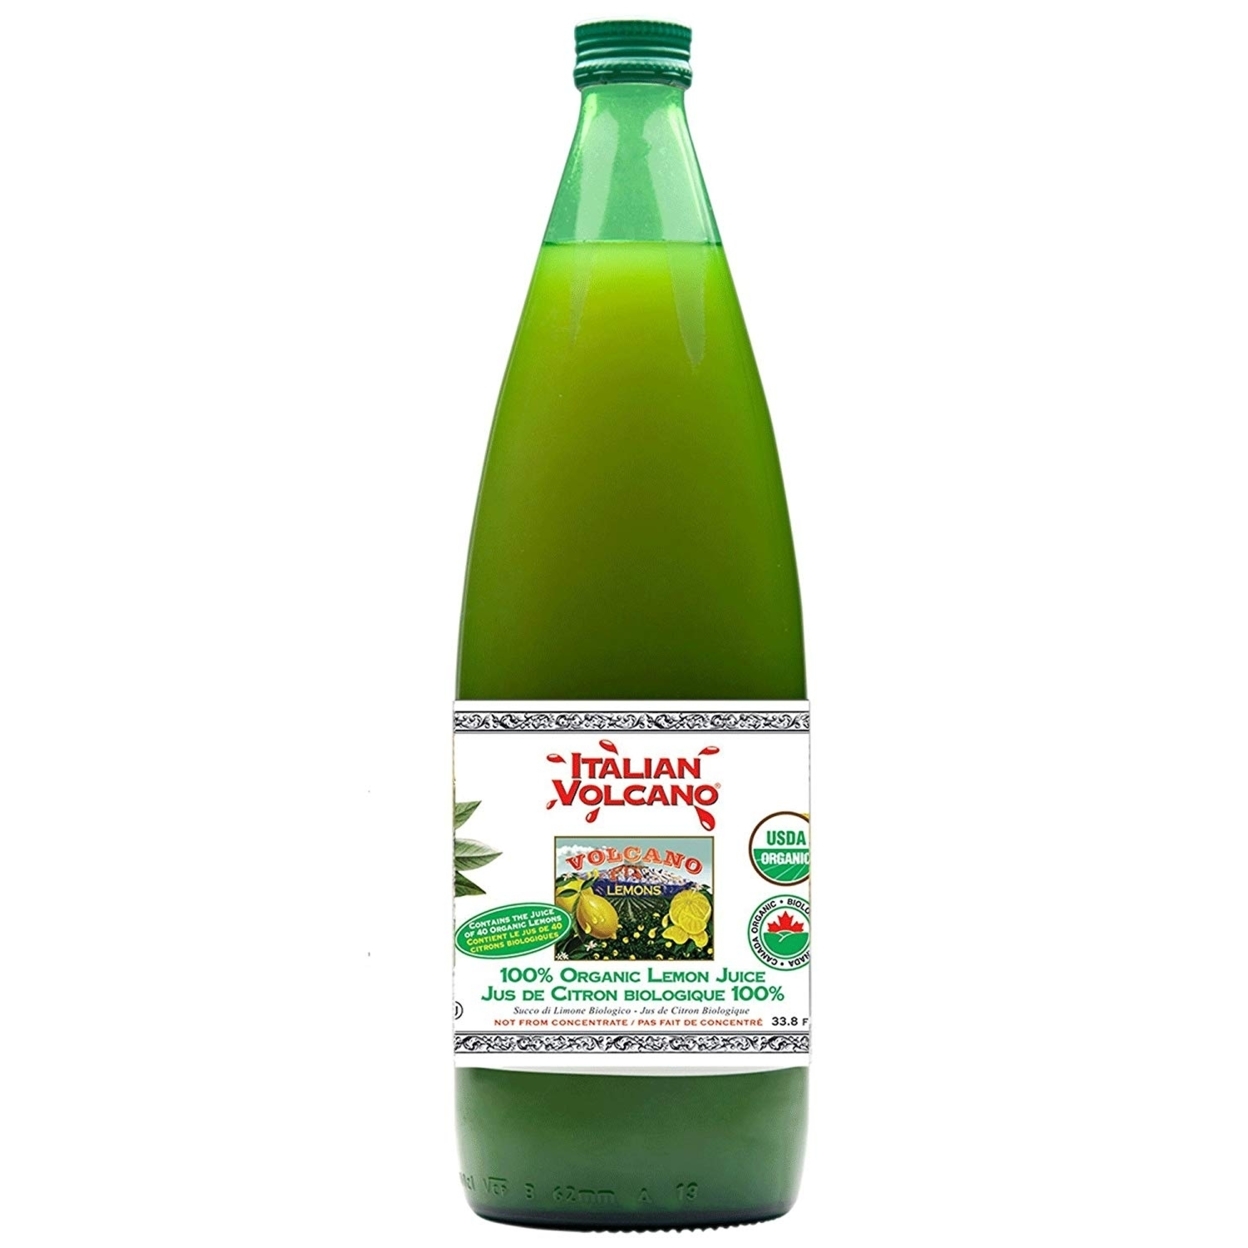 Italian Volcano USDA Organic Lemon Juice 1 Liter Bottle - 2 Pack